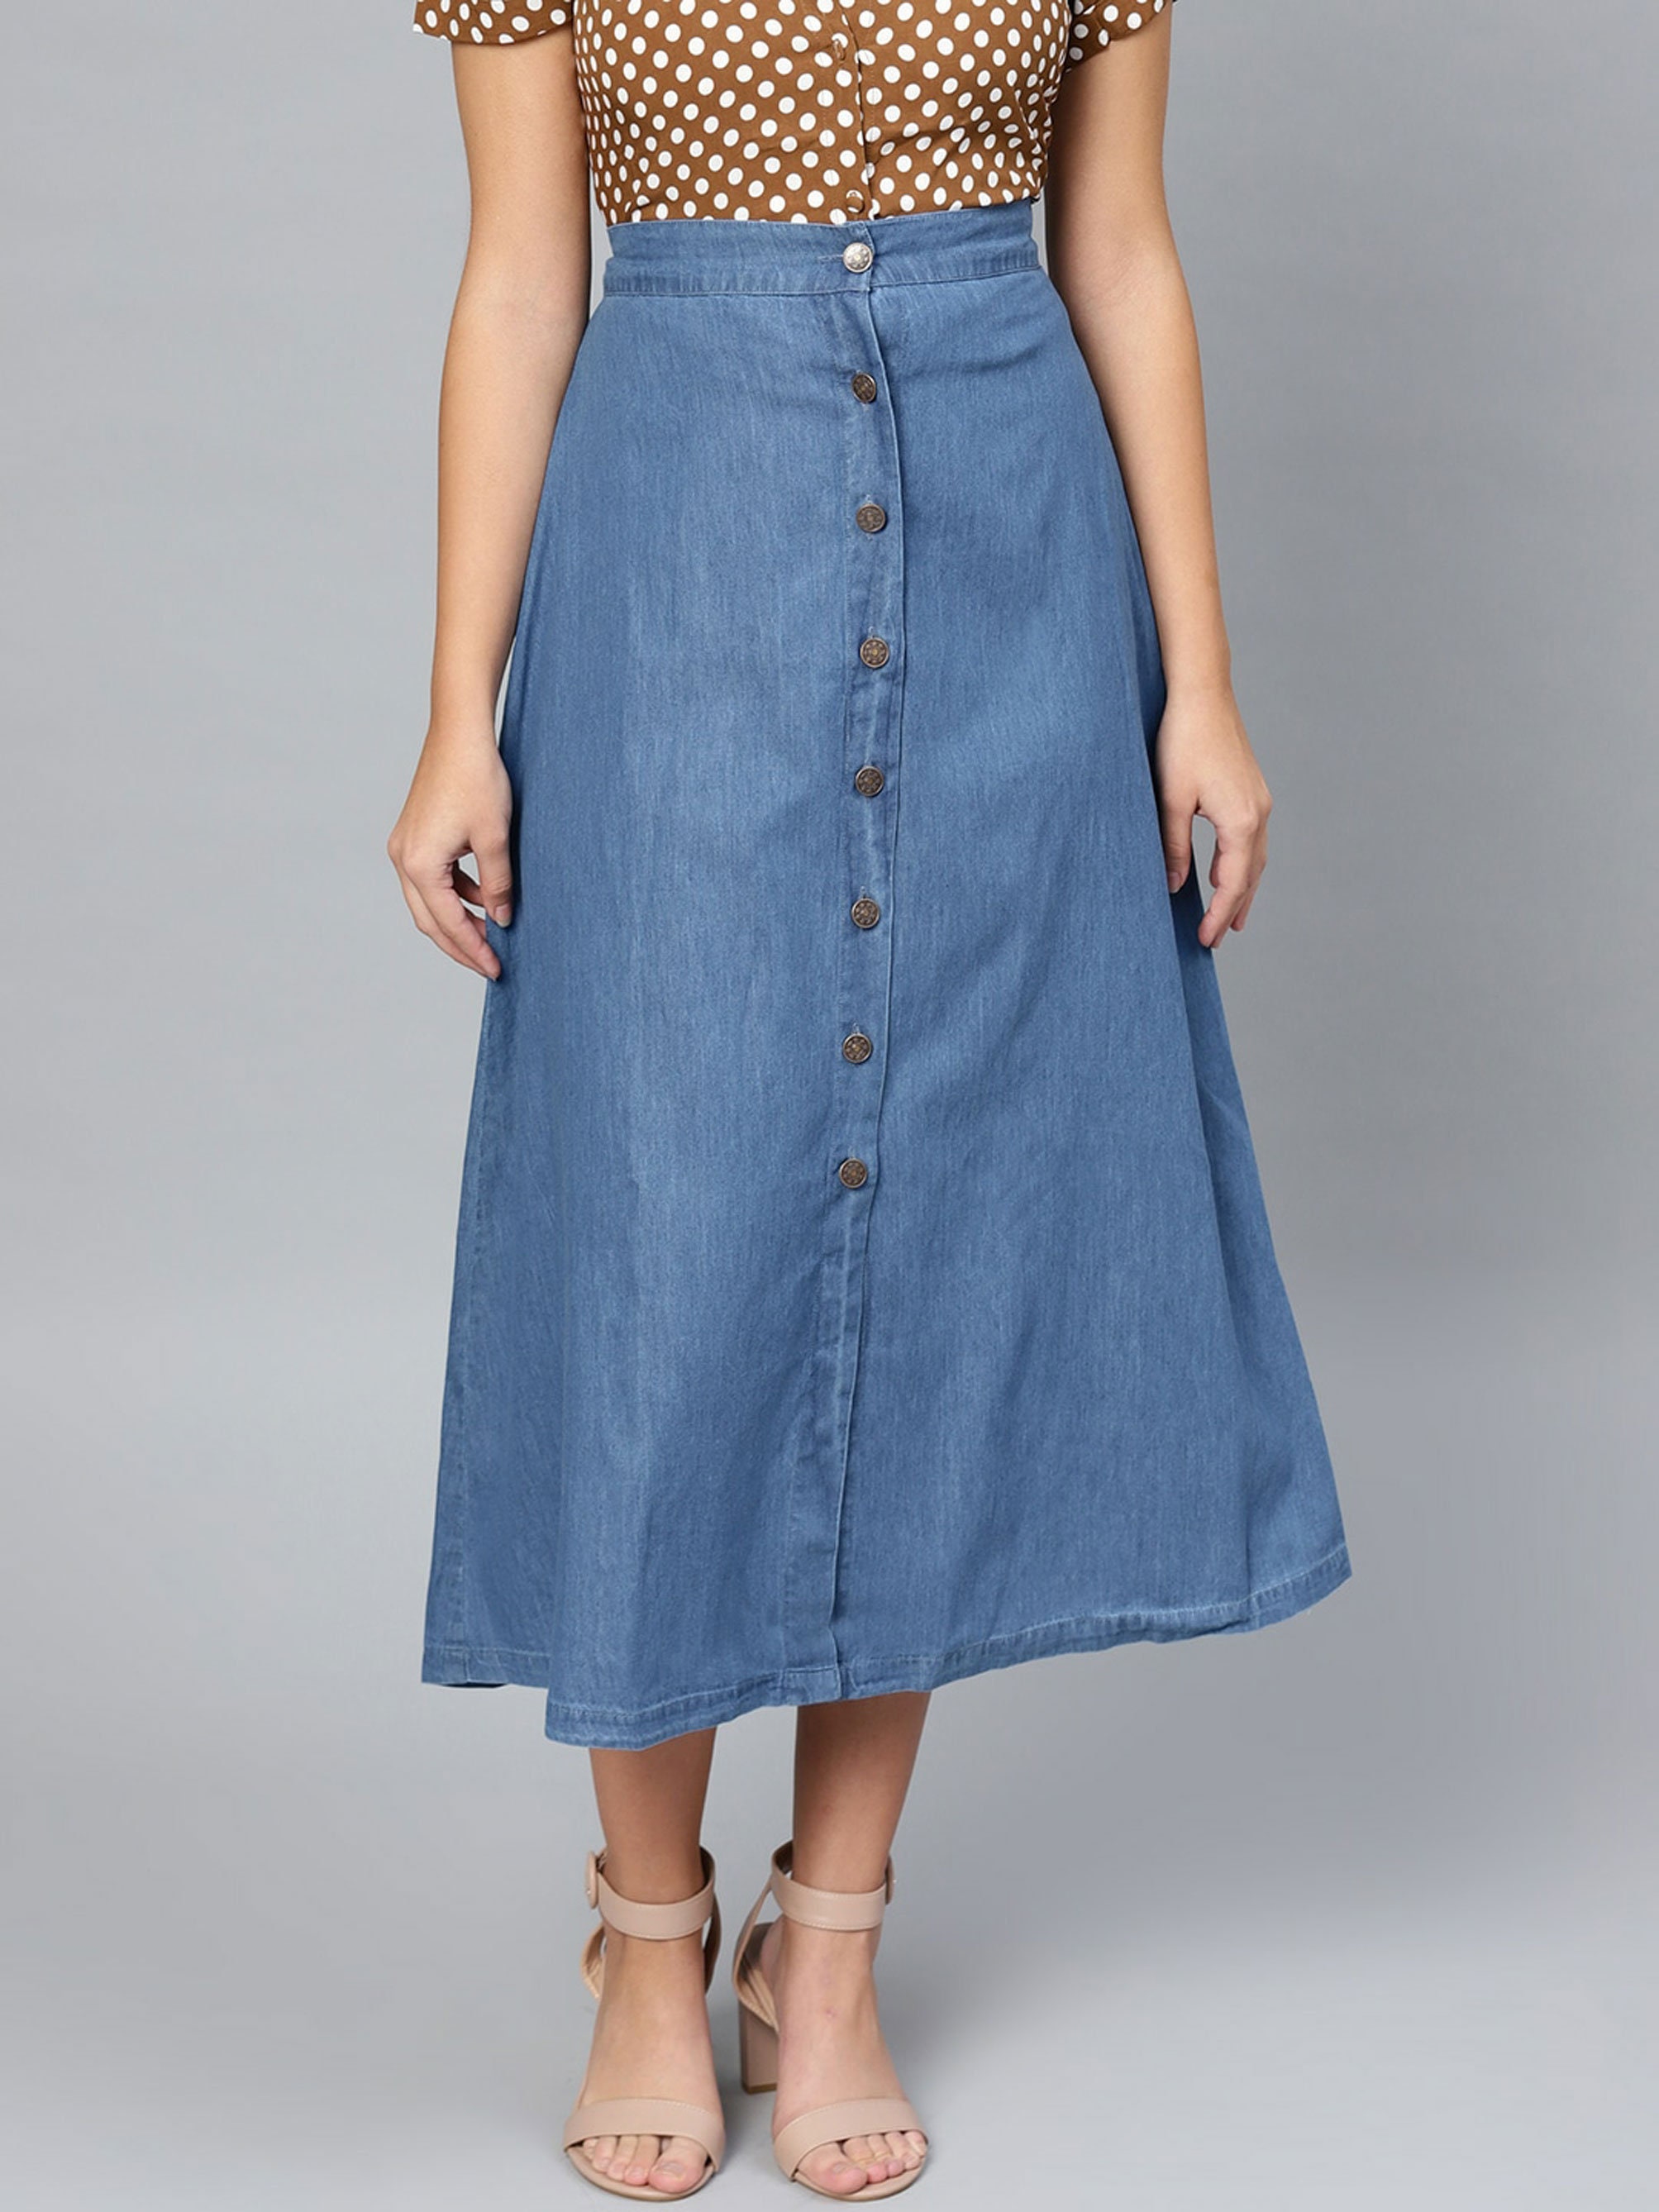 Blue Denim Skirt Pure Cotton Skirt Women Midi Skirt Casual | Etsy